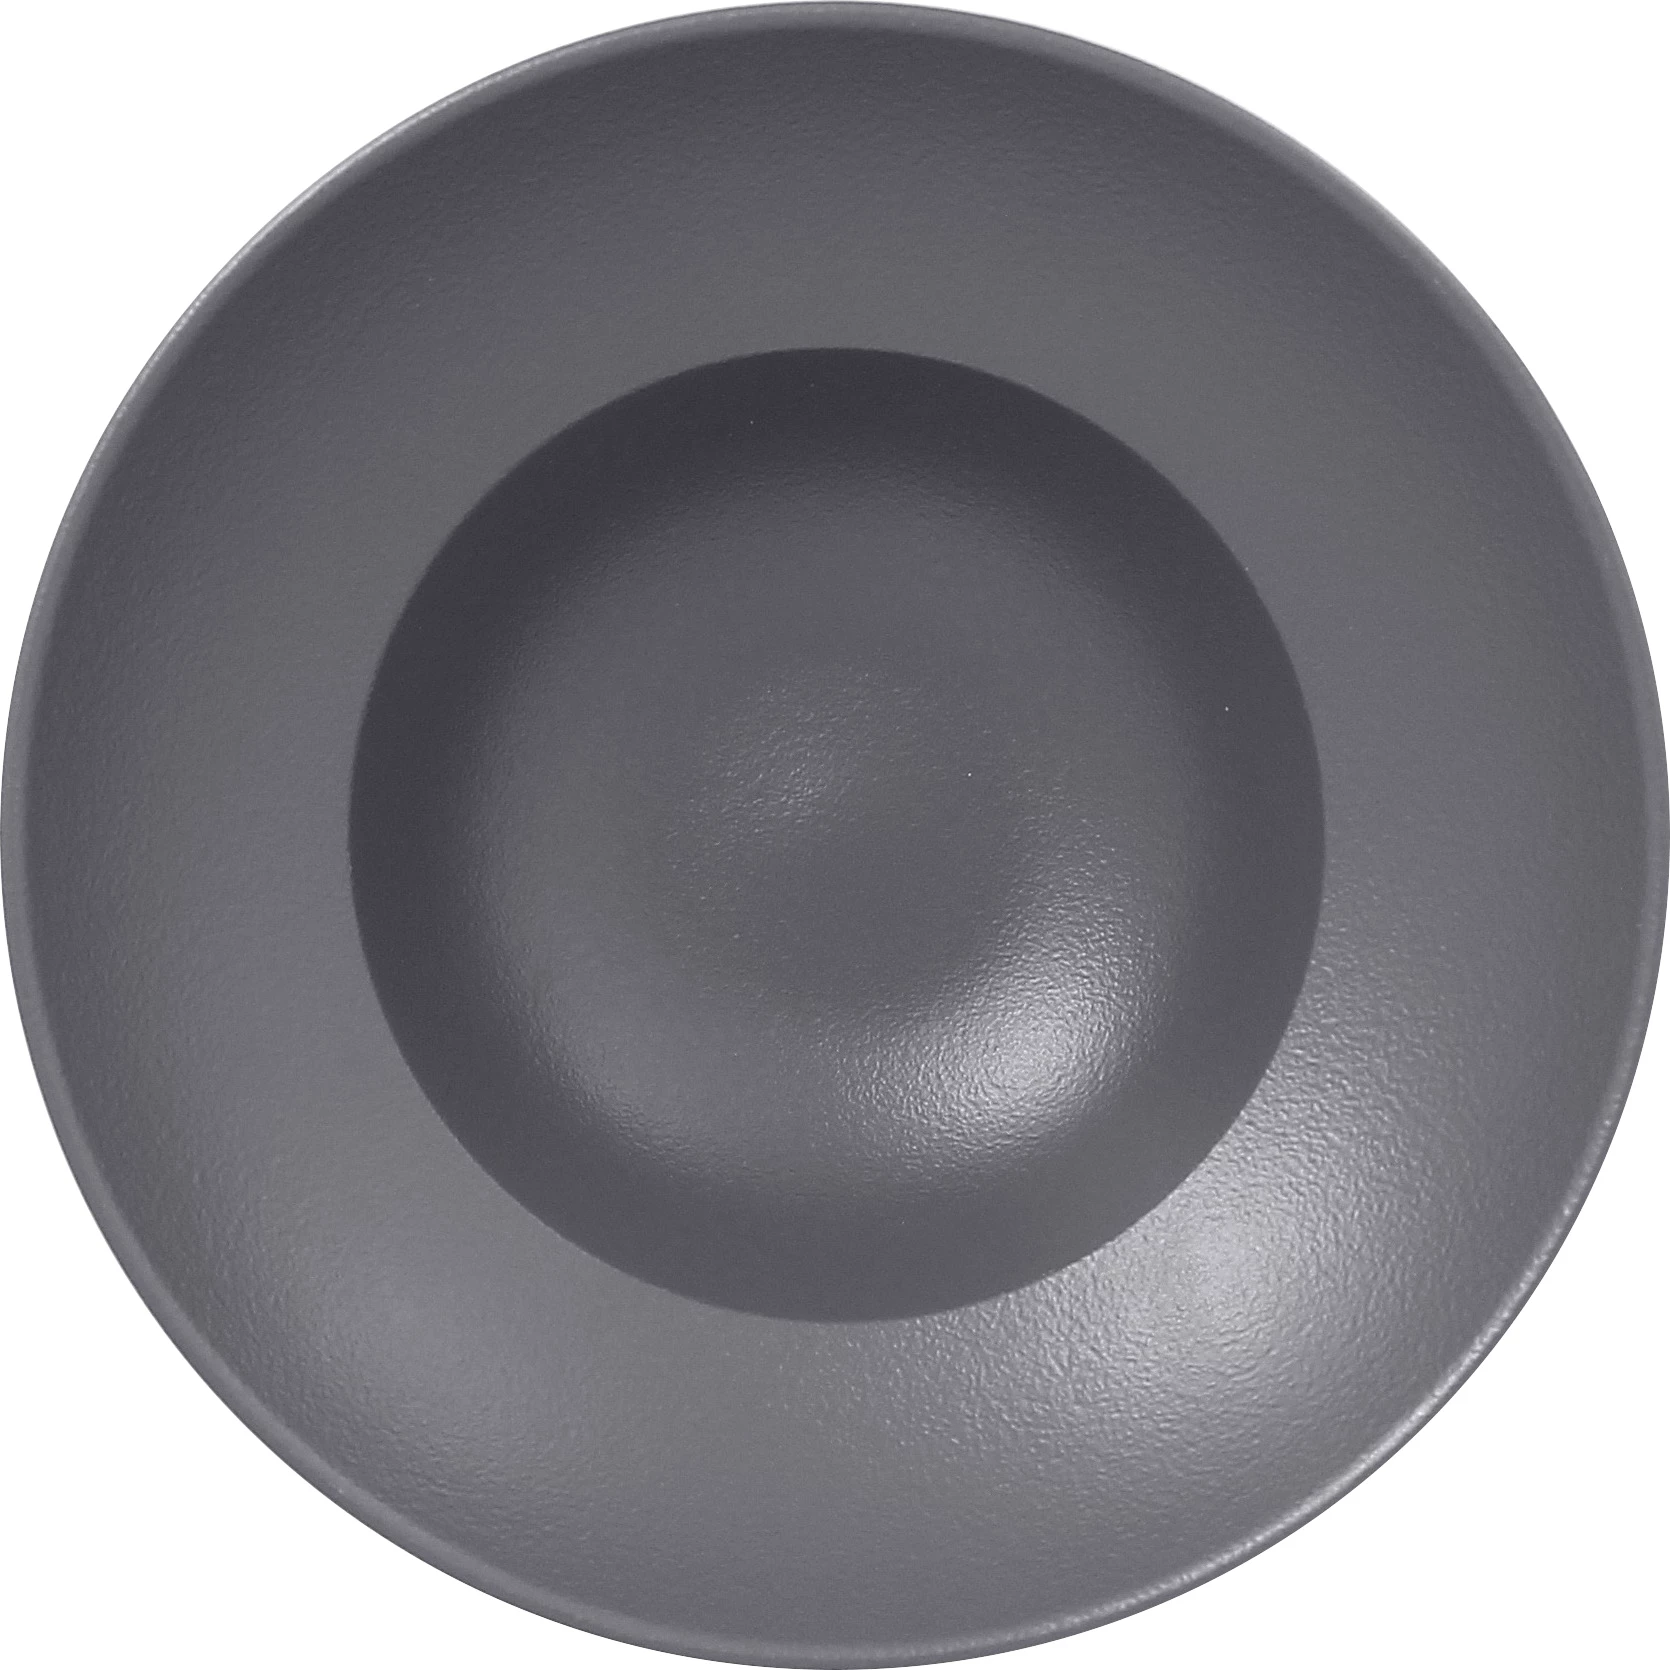 RAK Neofusion pastatallerken, grå, ø23 cm